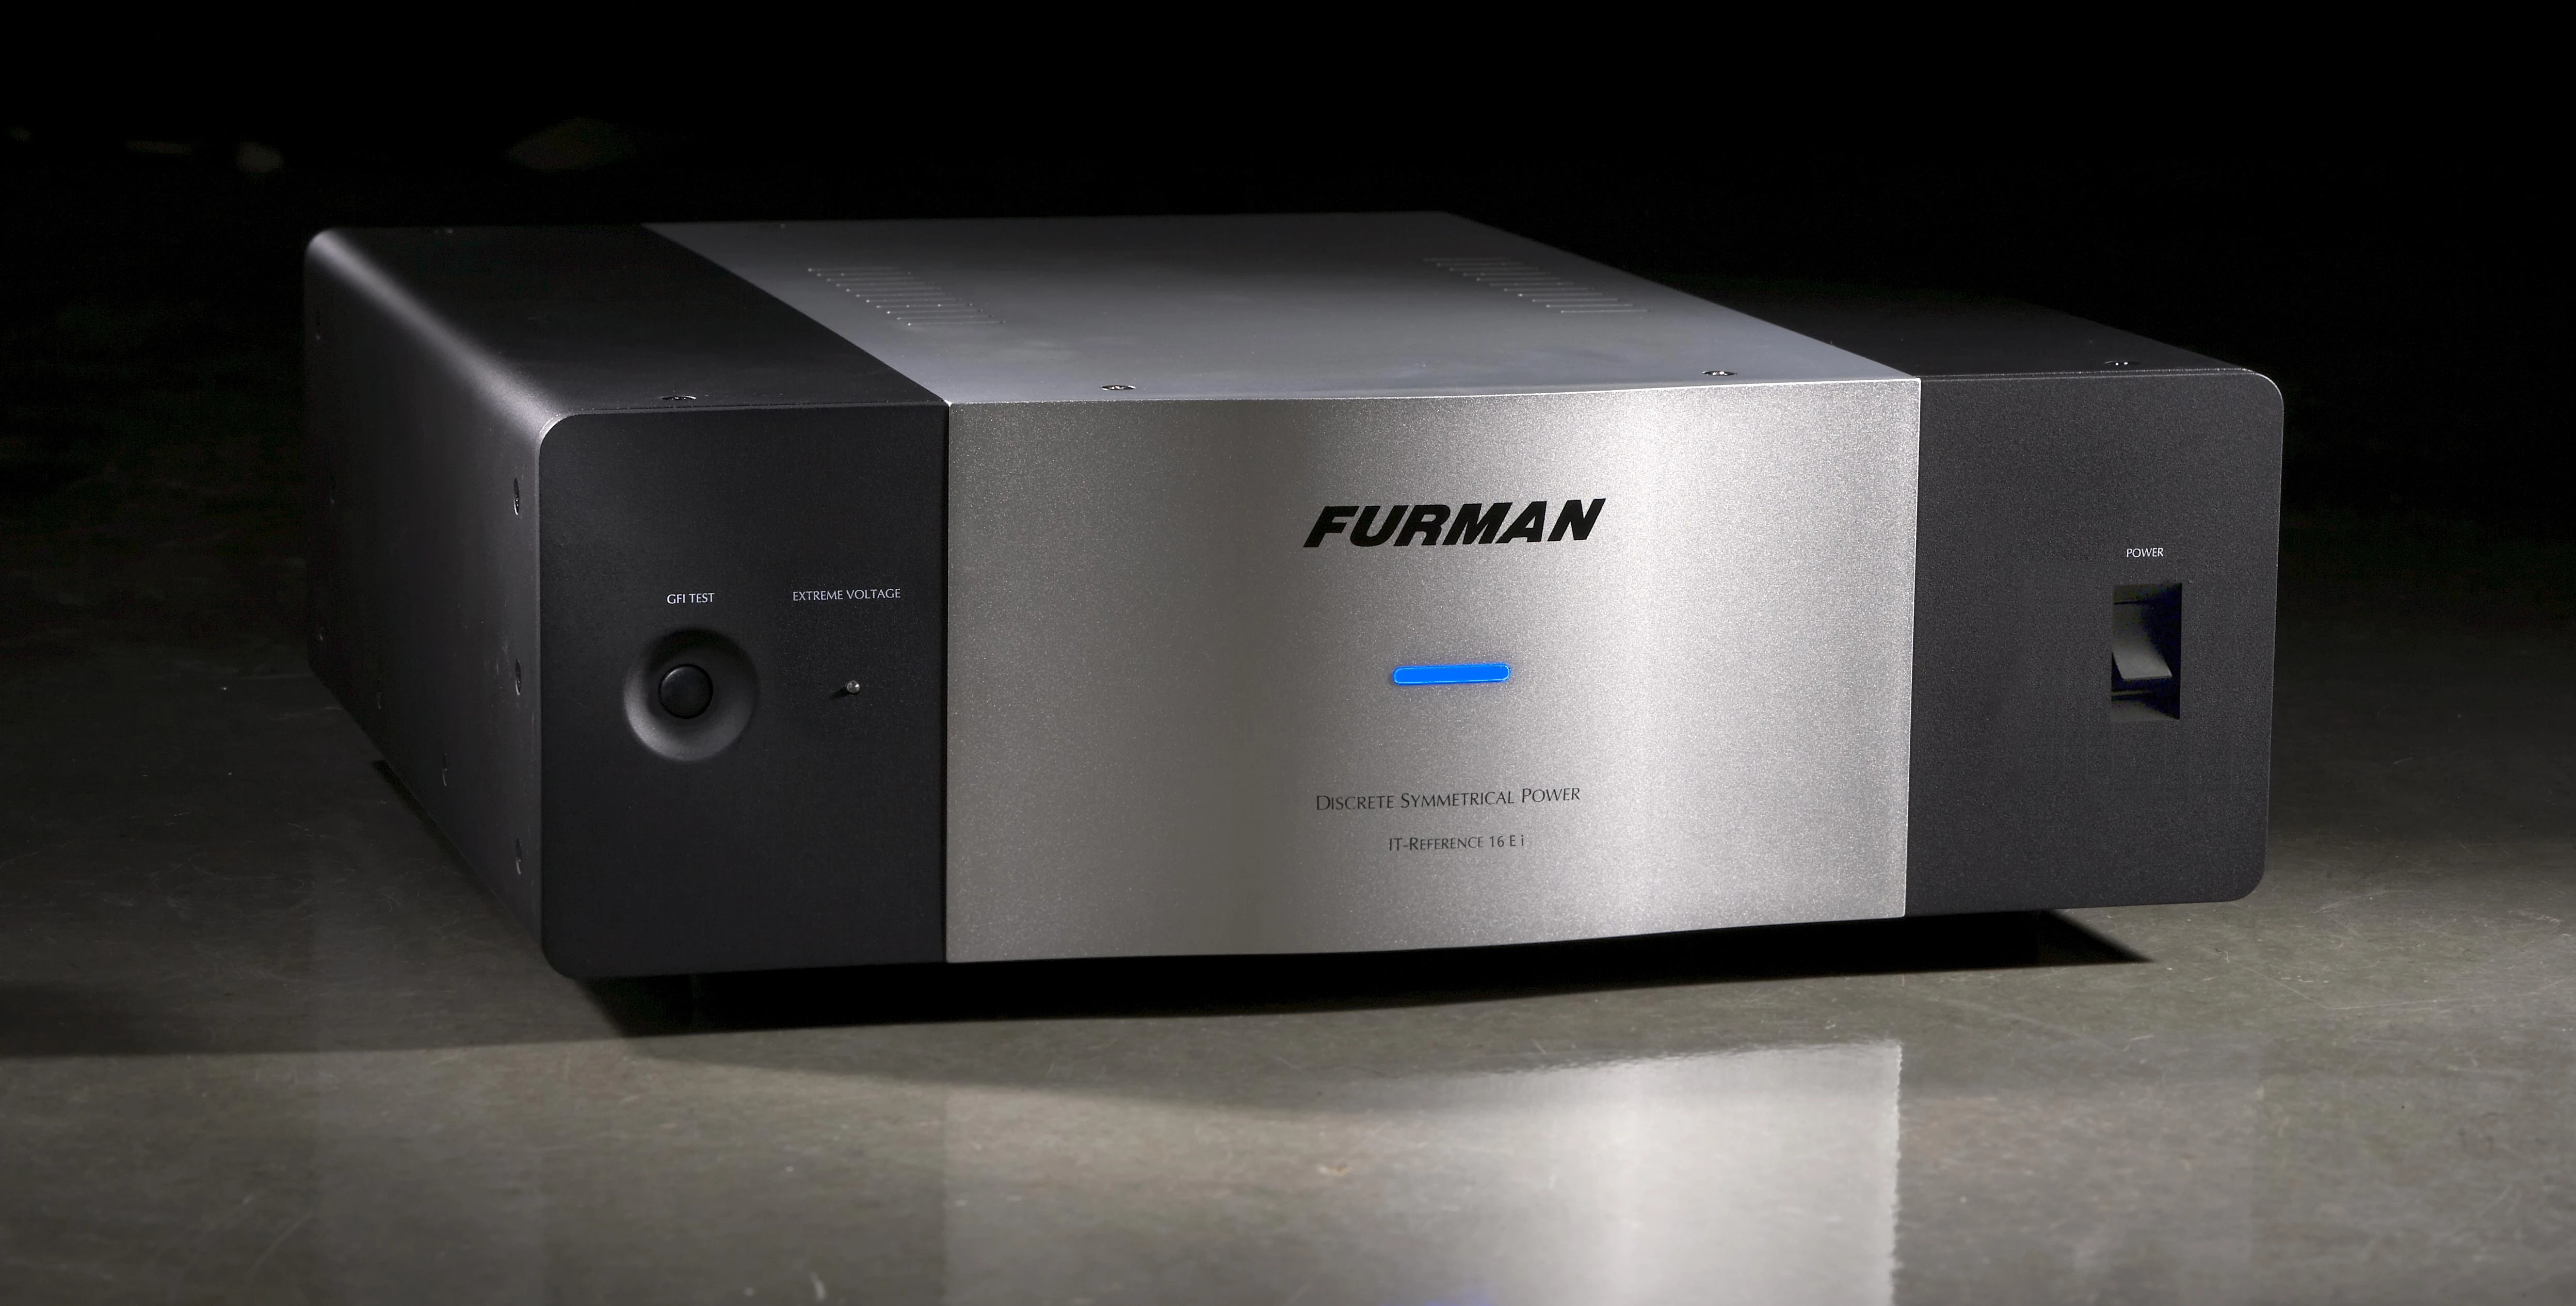 Furman IT-Reference 16 EI diskrete symmetrische gefilterte Netzstromversorgung